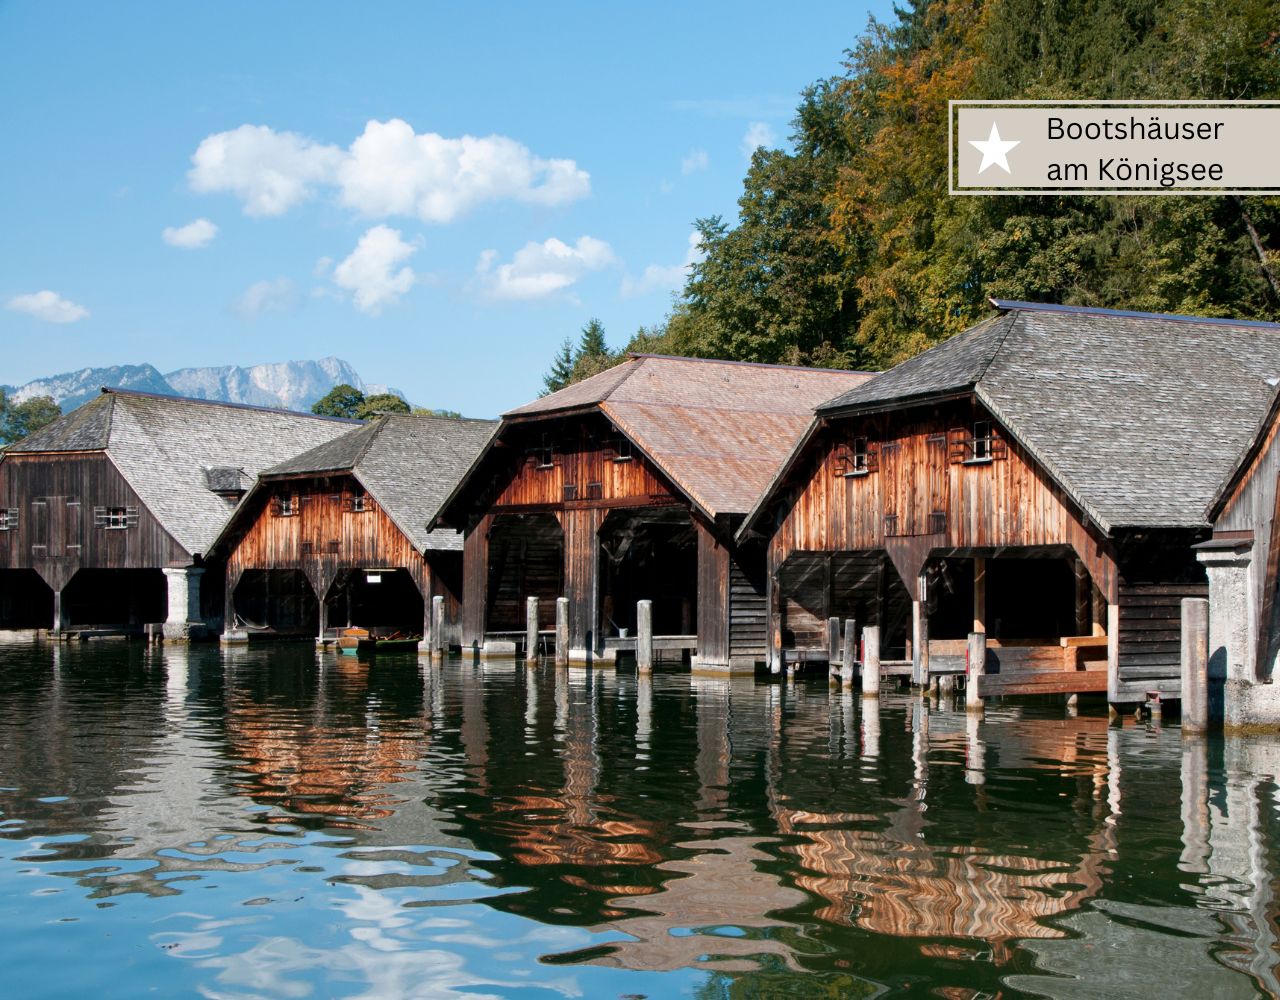 Schöne Bayerische Seen - Königsee in Oberbayern mit dem Boot